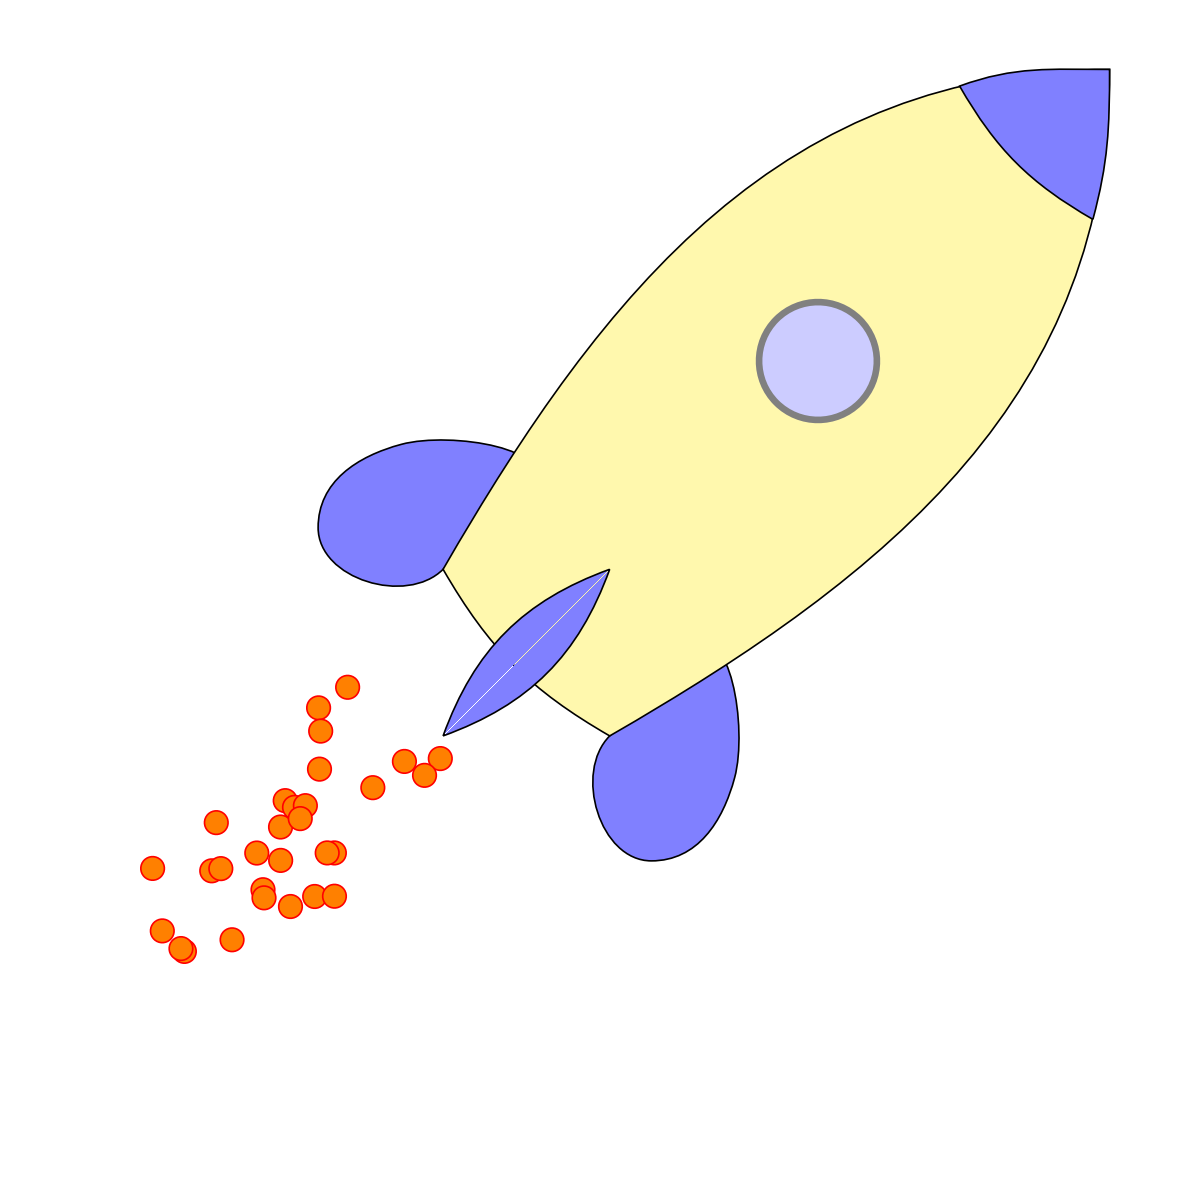 TikZ 绘制一个火箭示意图